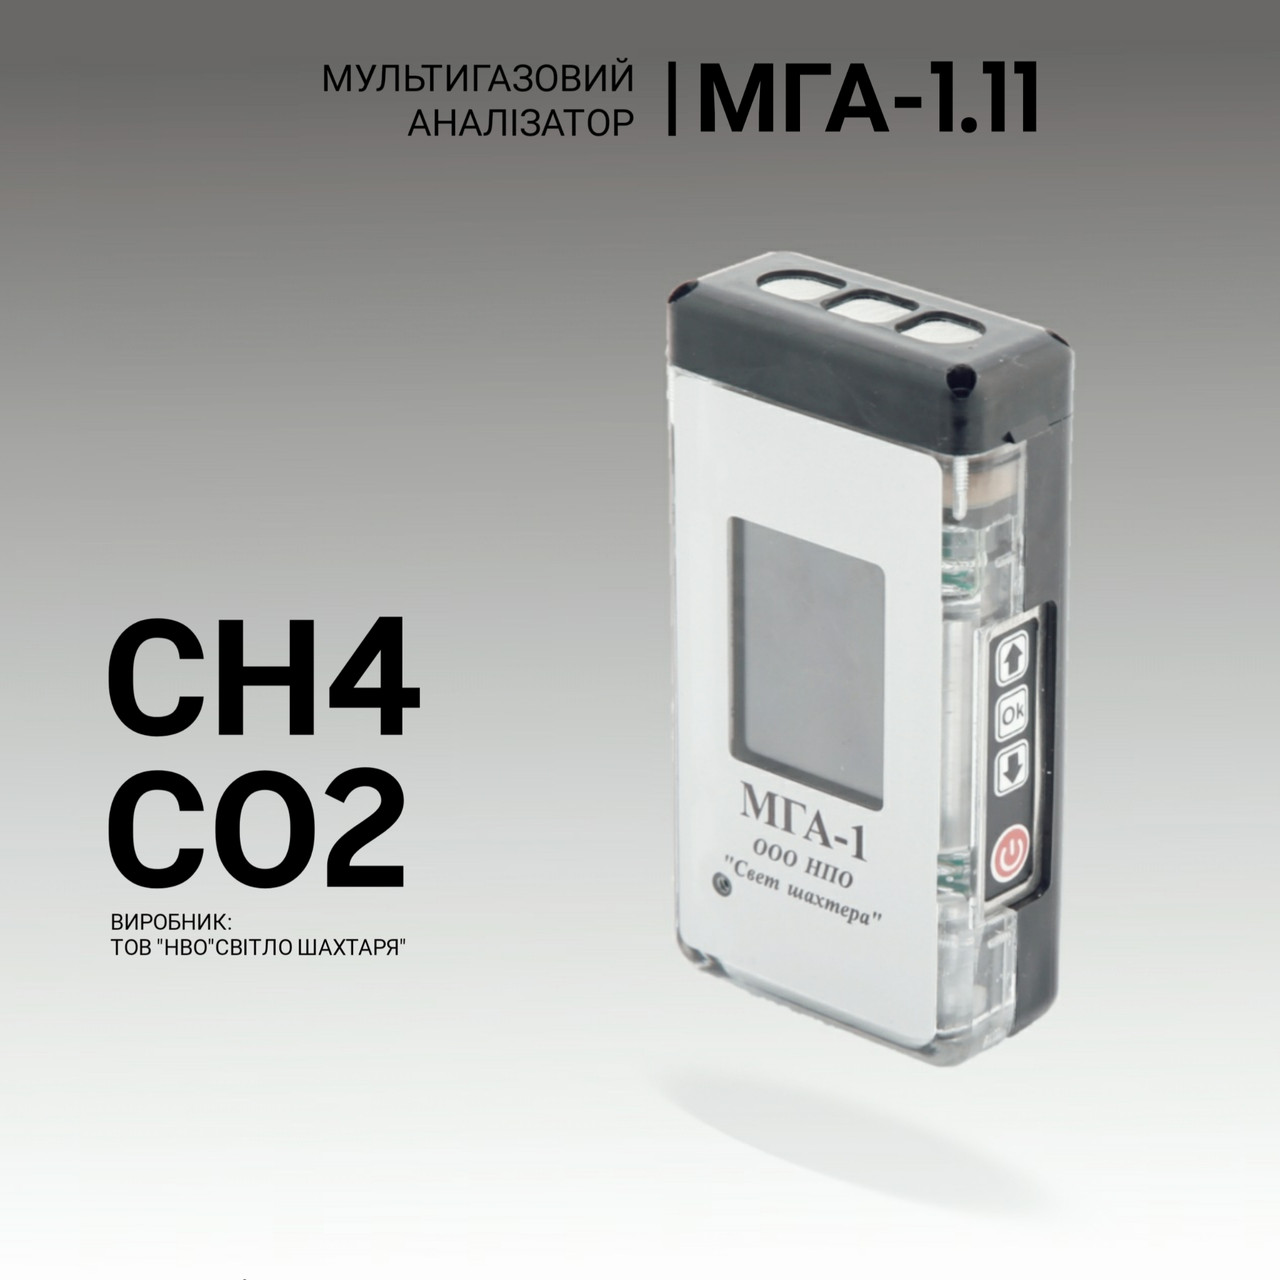 Мультигазовий аналізатор МГА-1.11 (СH4, CO2). Аналізатор газовий. Промисловий газоаналізатор